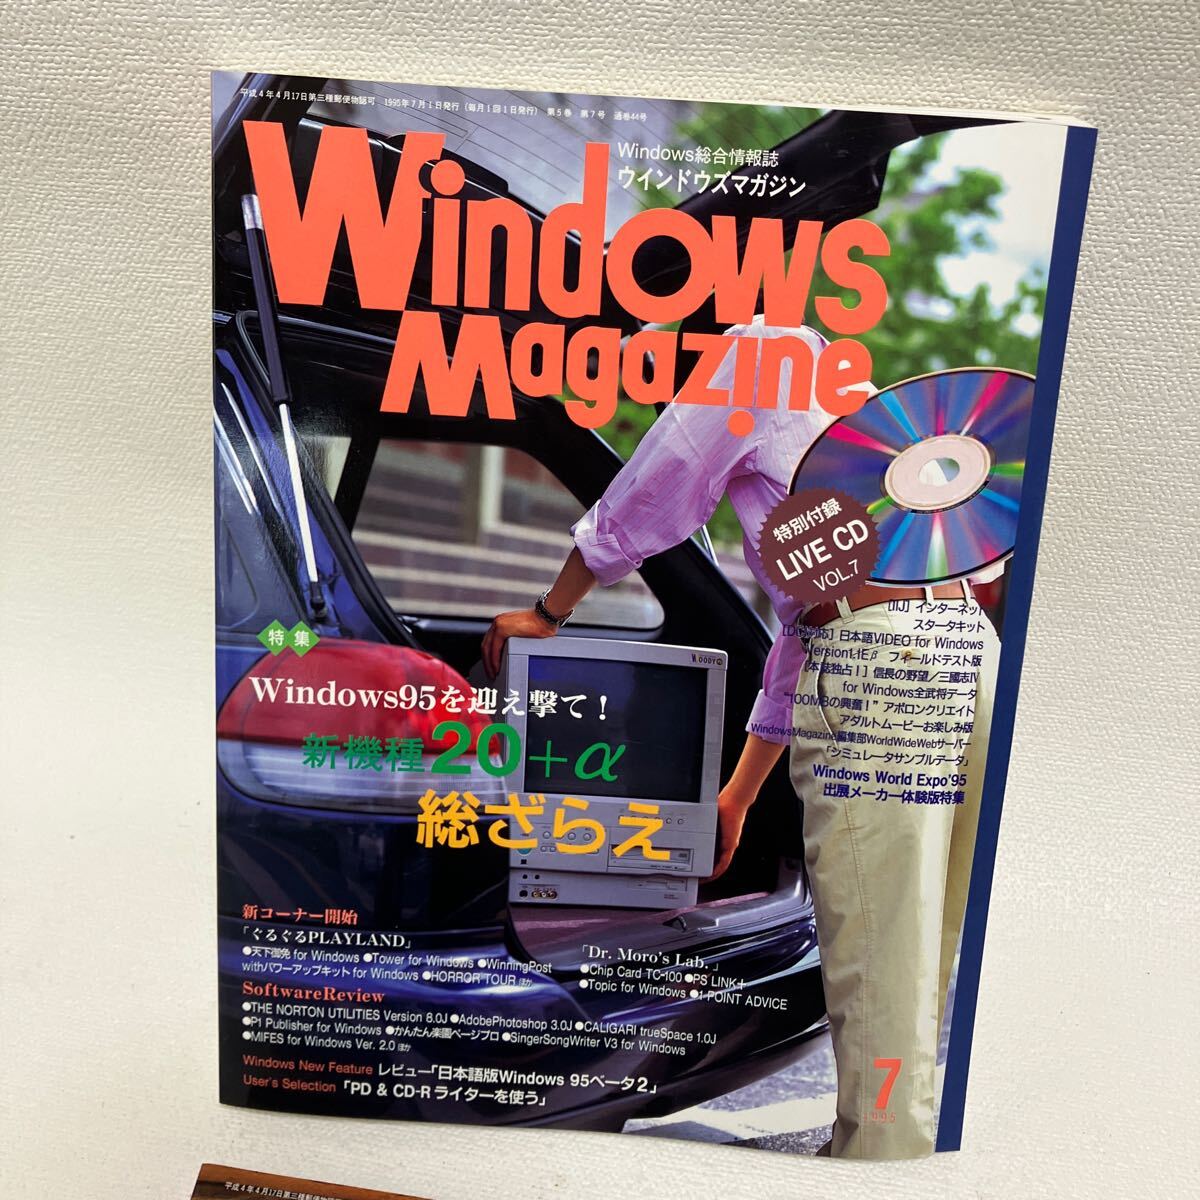 c352-28 80 журнал Windows Magazine окно z практическое применение информация журнал персональный компьютер совместно интернет журнал дополнение нет 1995 год загрязнения боль есть 